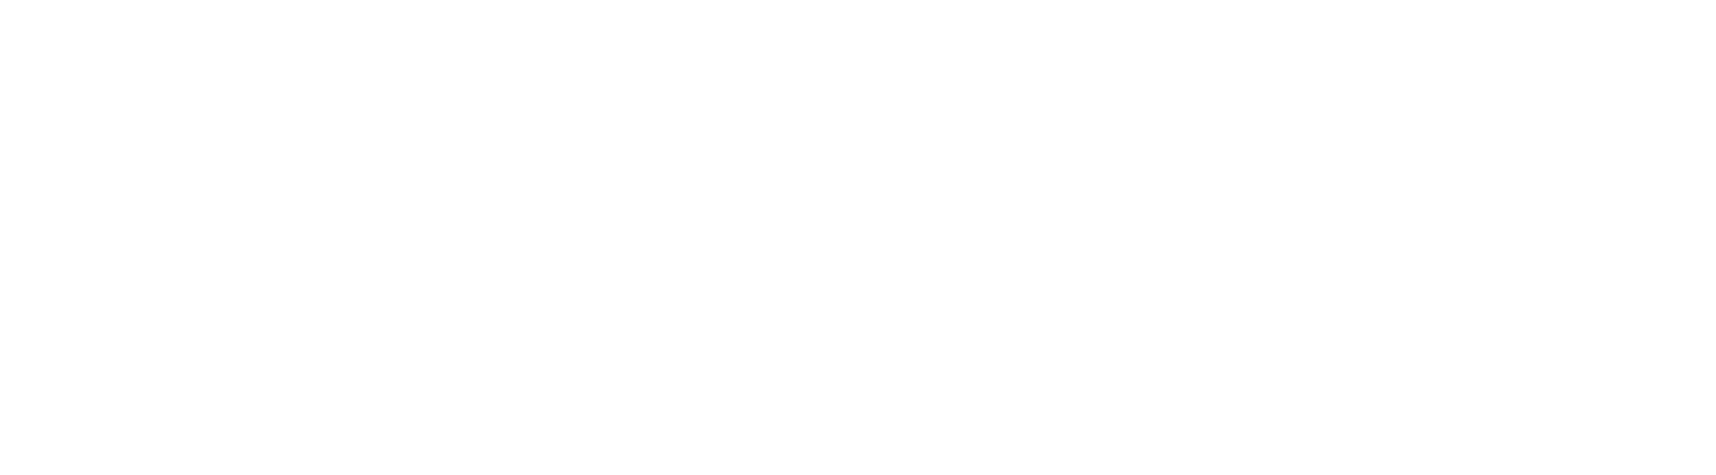 AccRoadshow_Logo_White-1